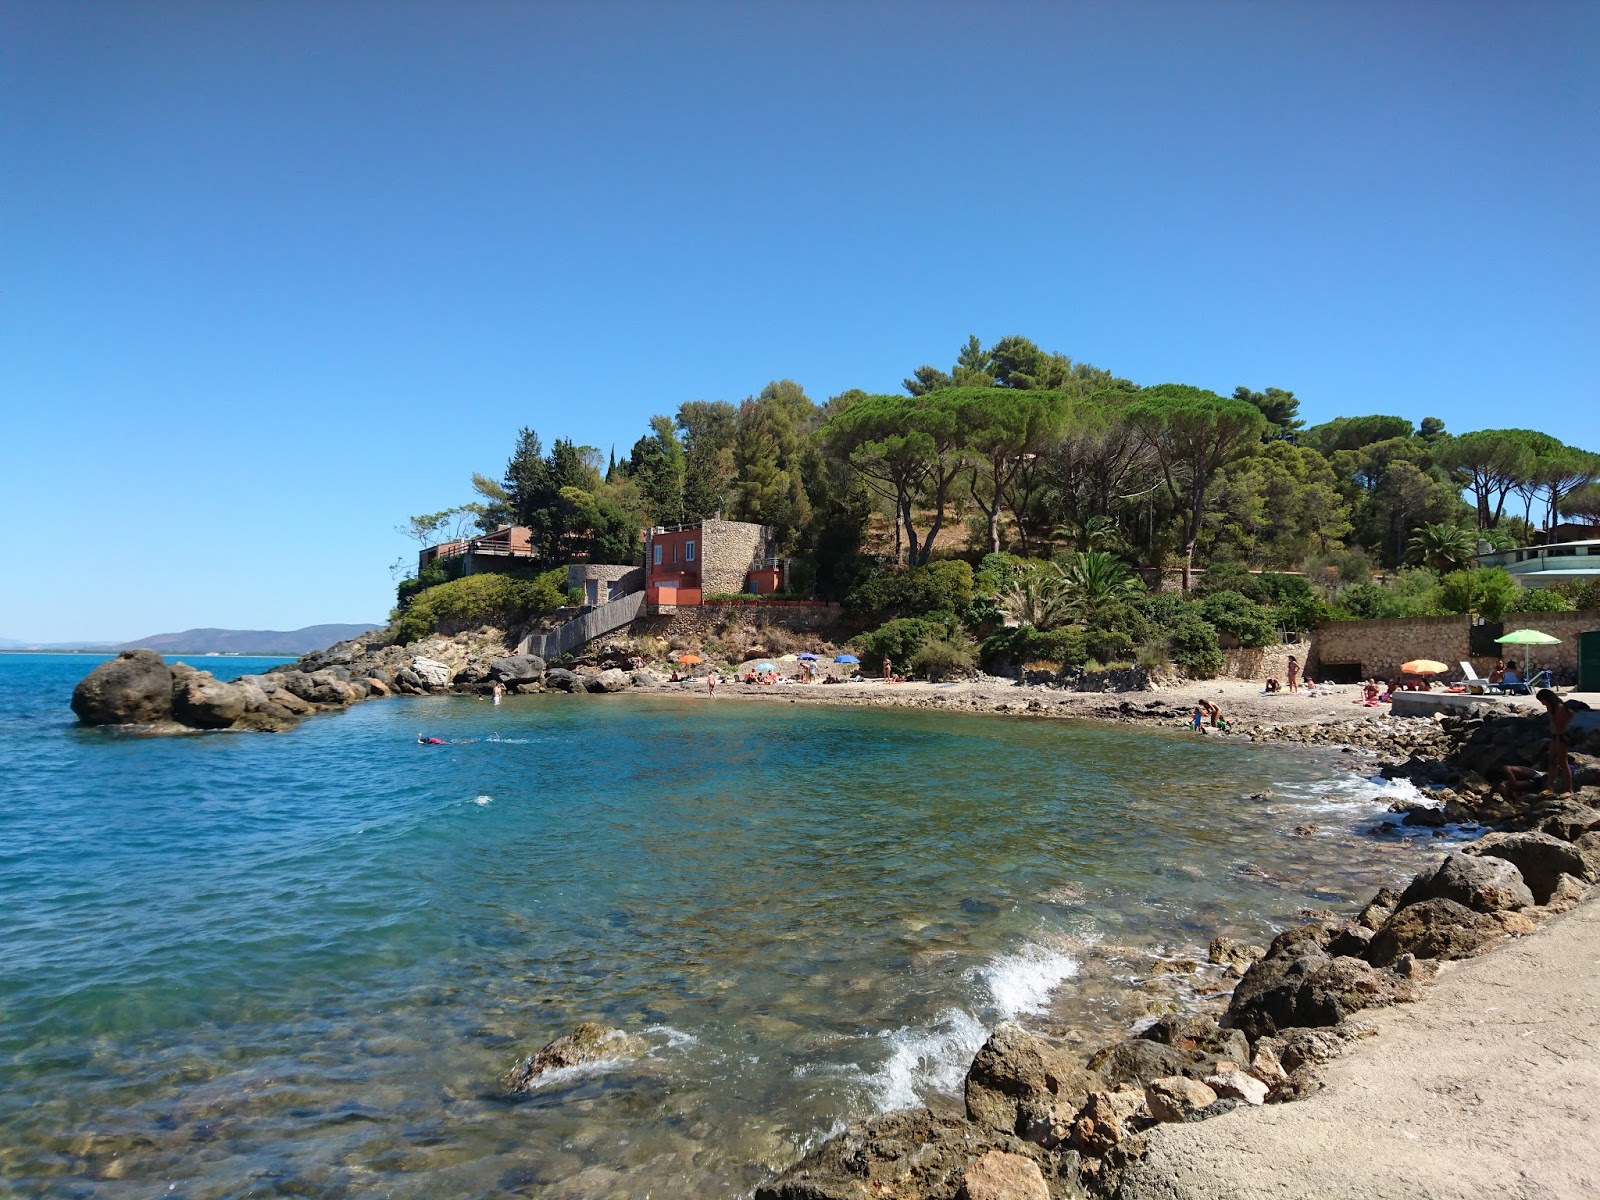 Foto von Spiaggia della Bionda mit winzige bucht